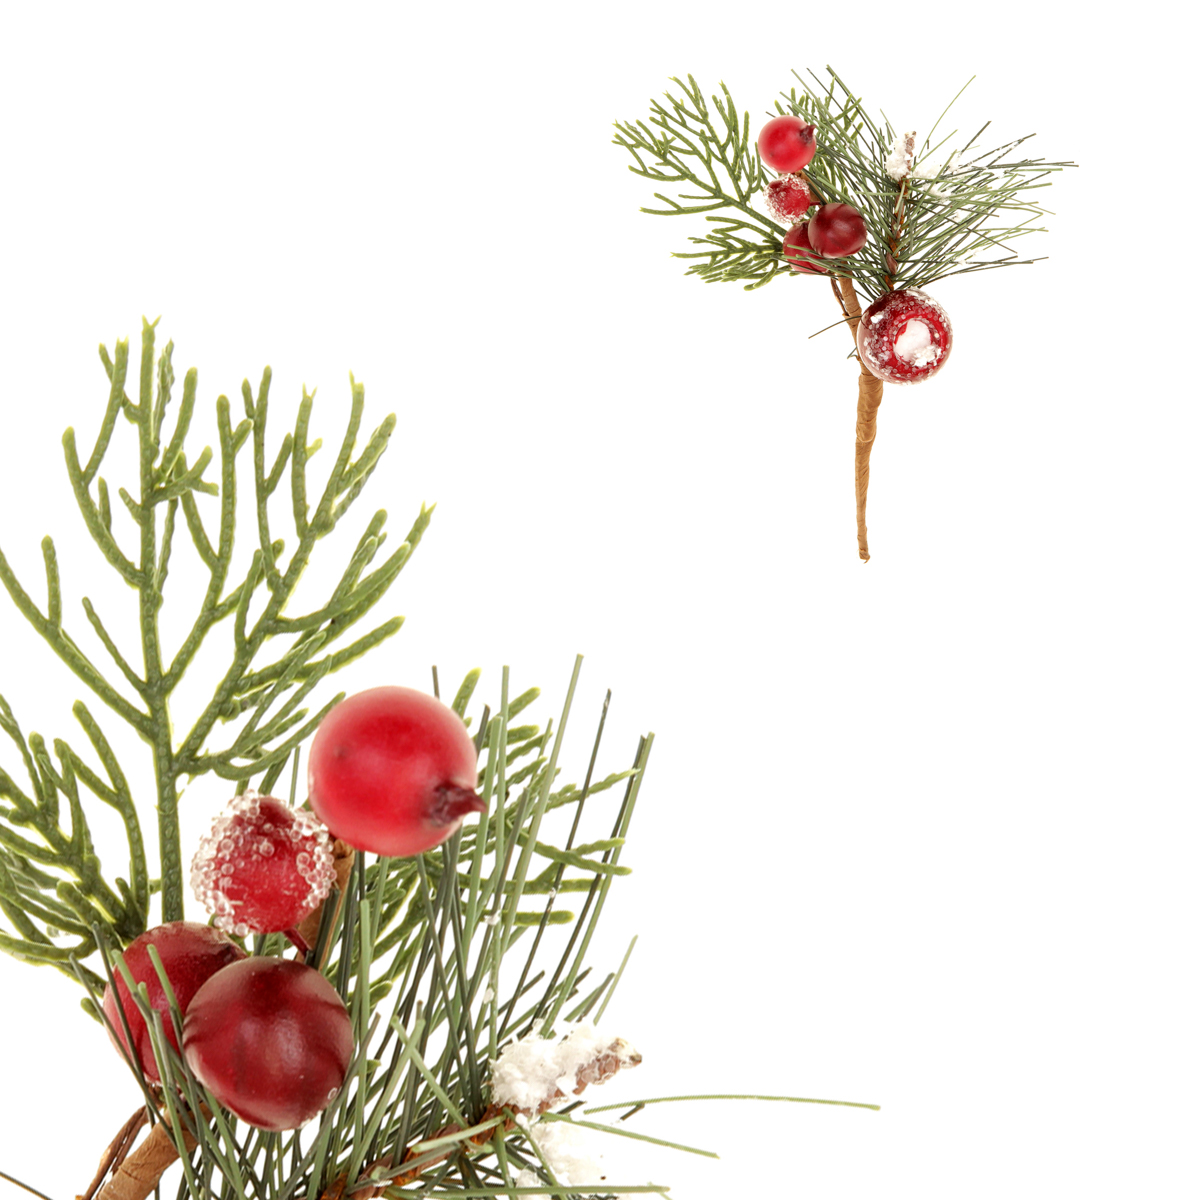 Větvička vánoční ojíněná , umělá dekorace